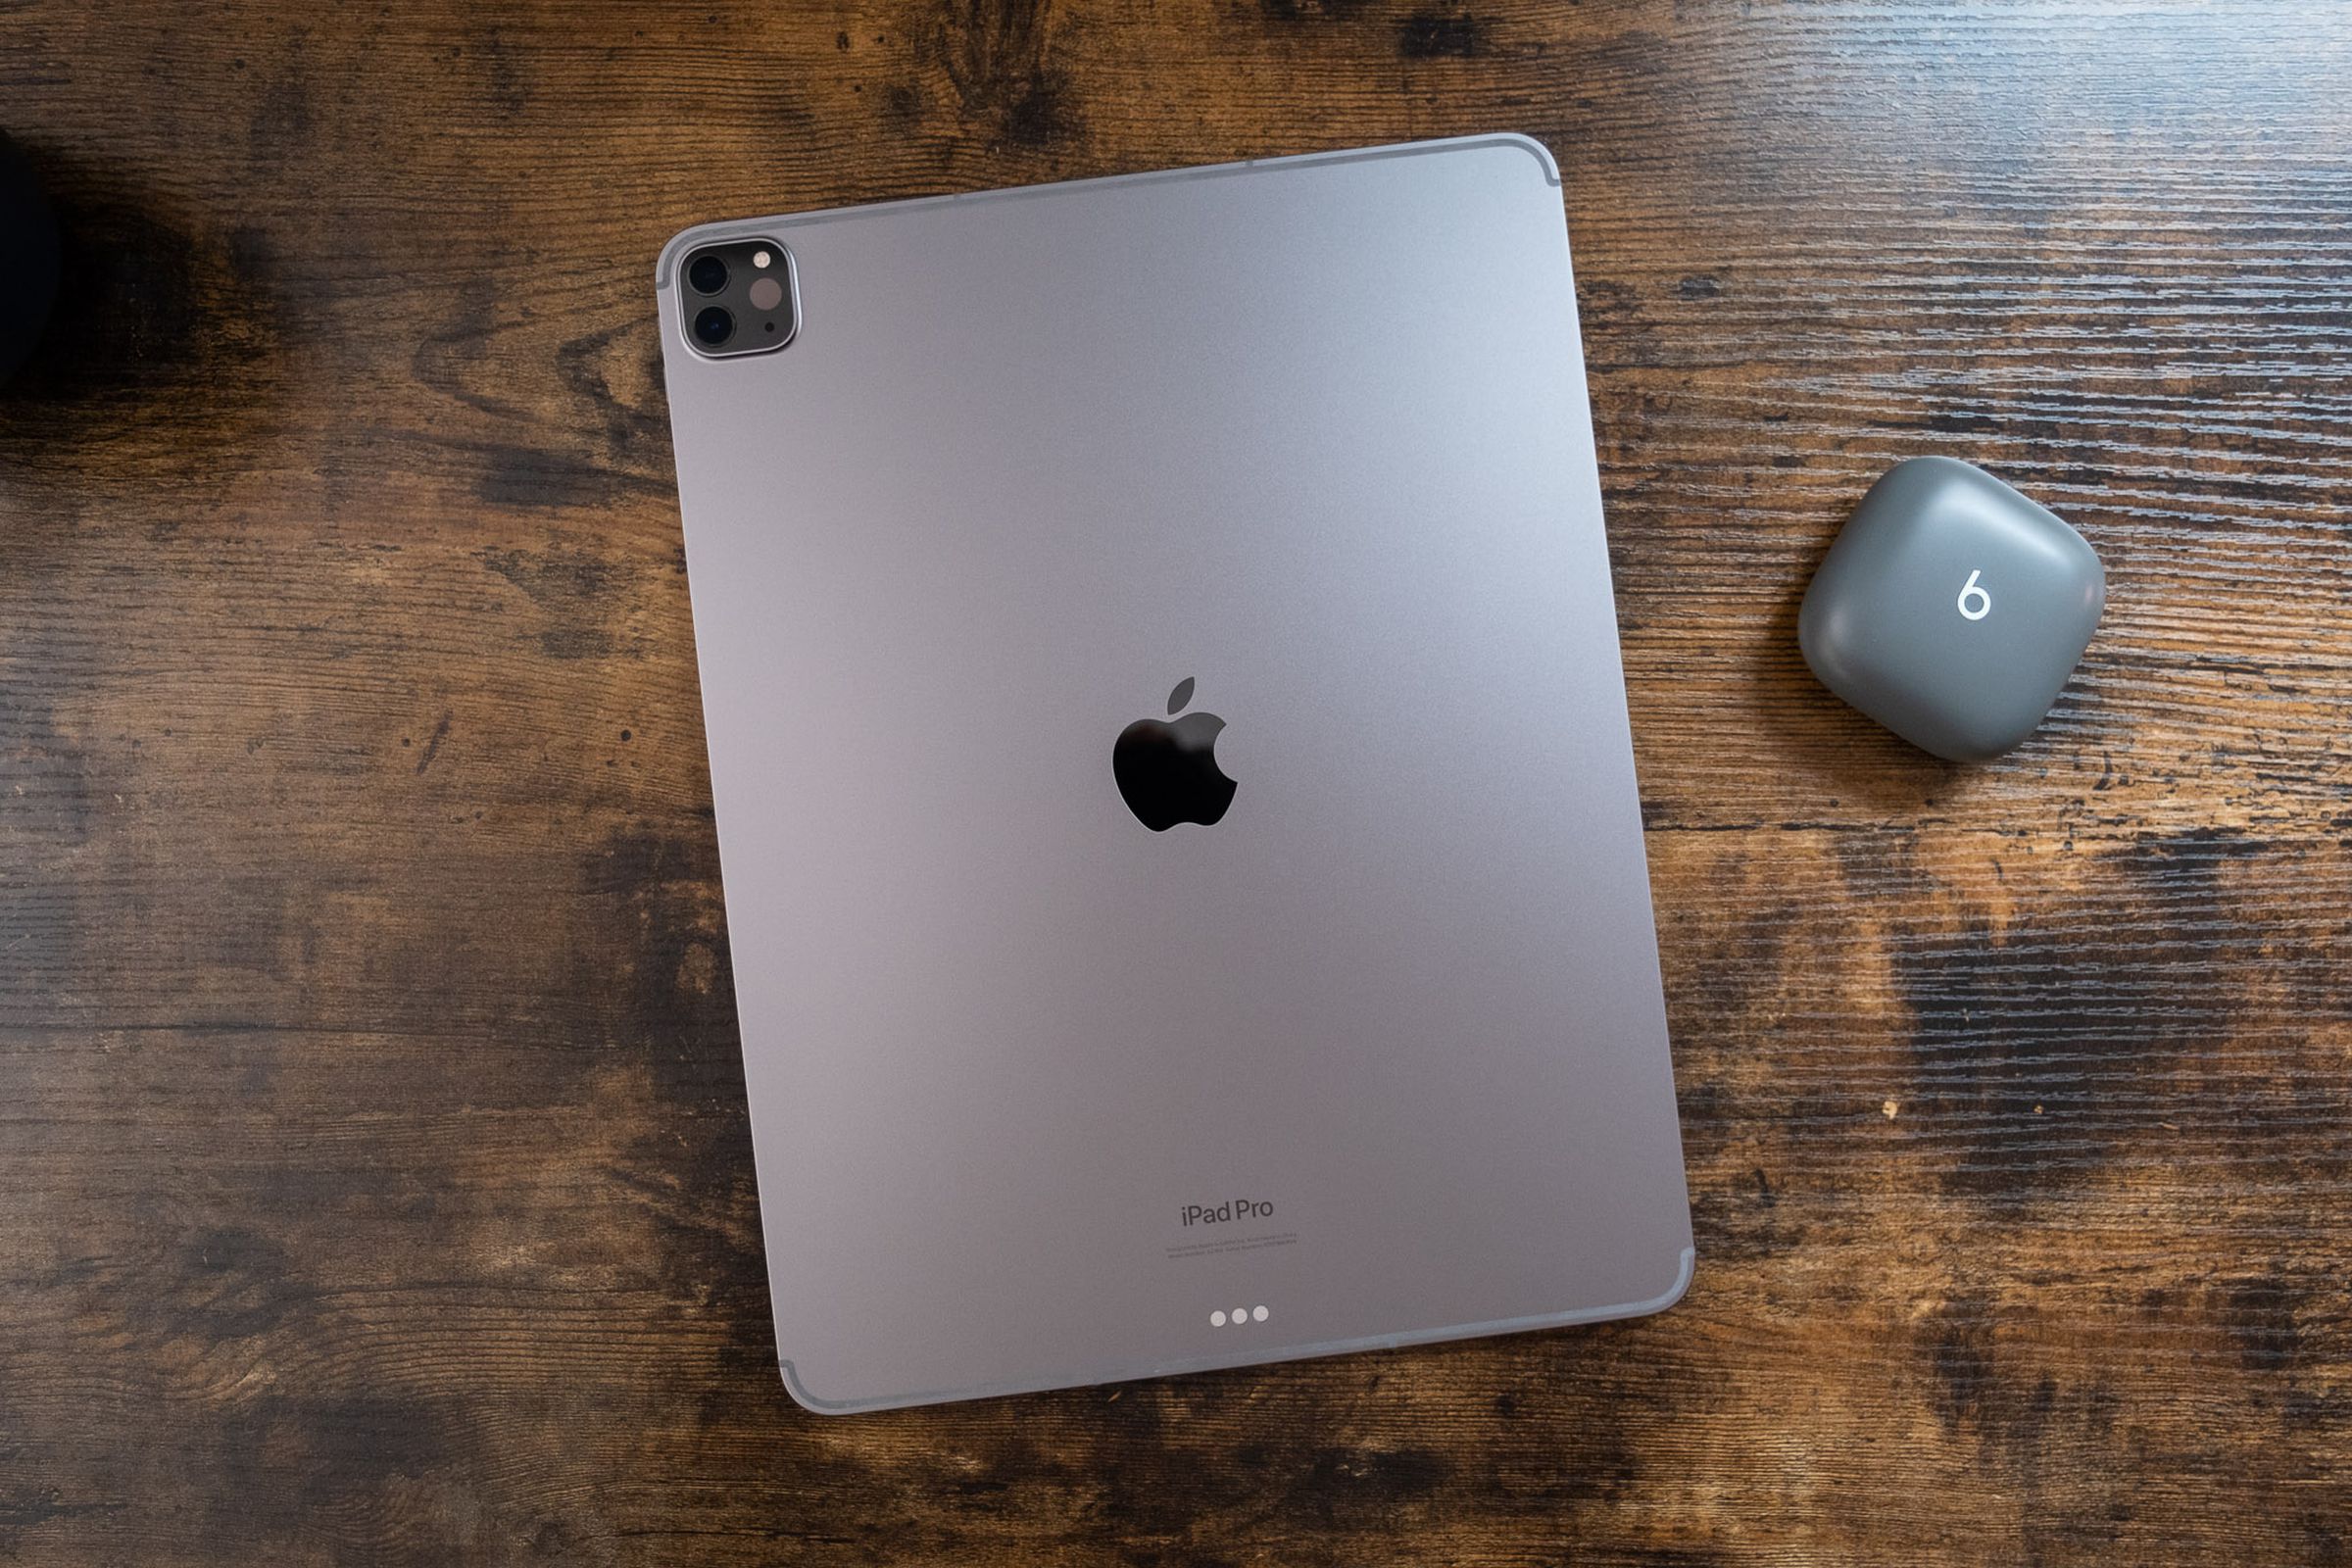 جهاز iPad Pro مقاس 12.9 بوصة رمادي اللون مقلوب على طاولة خشبية ، ويُنظر إليه من أعلى إلى أسفل.